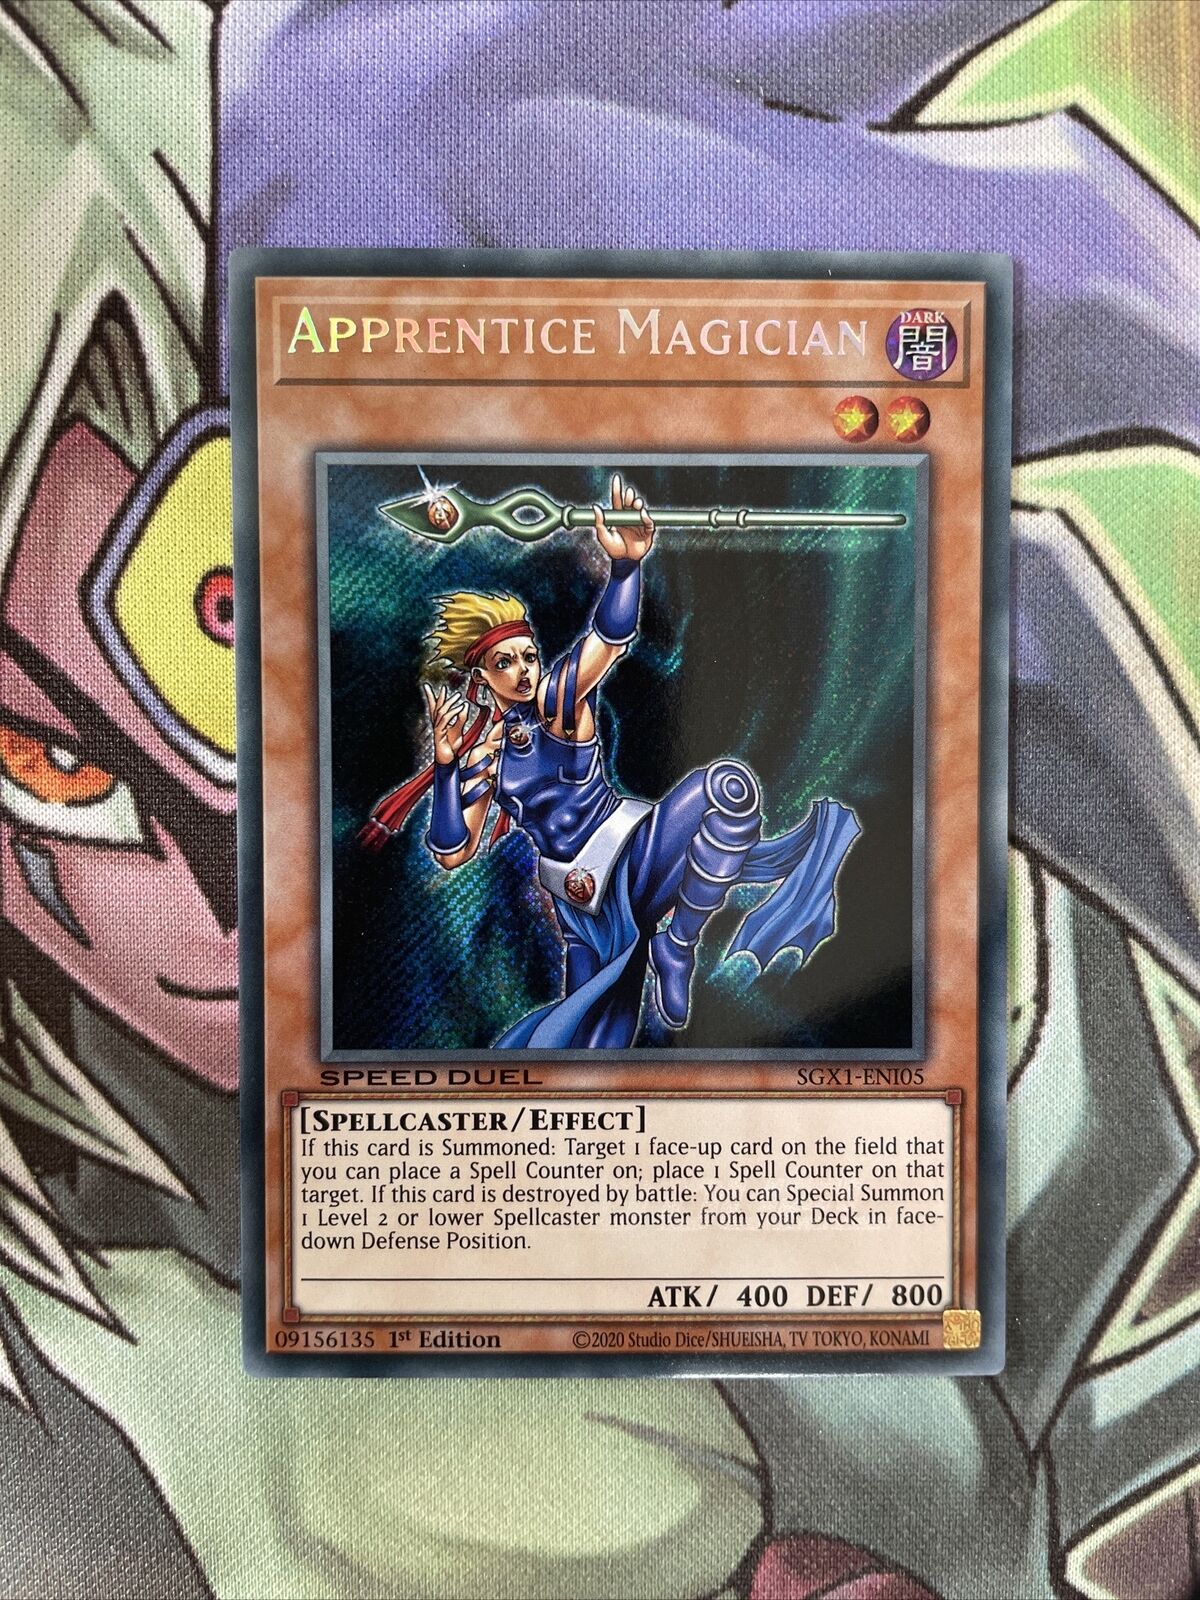 SGX1-ENI05 Apprentice Magician Secret Rare Speed Duel NM Yugioh Card